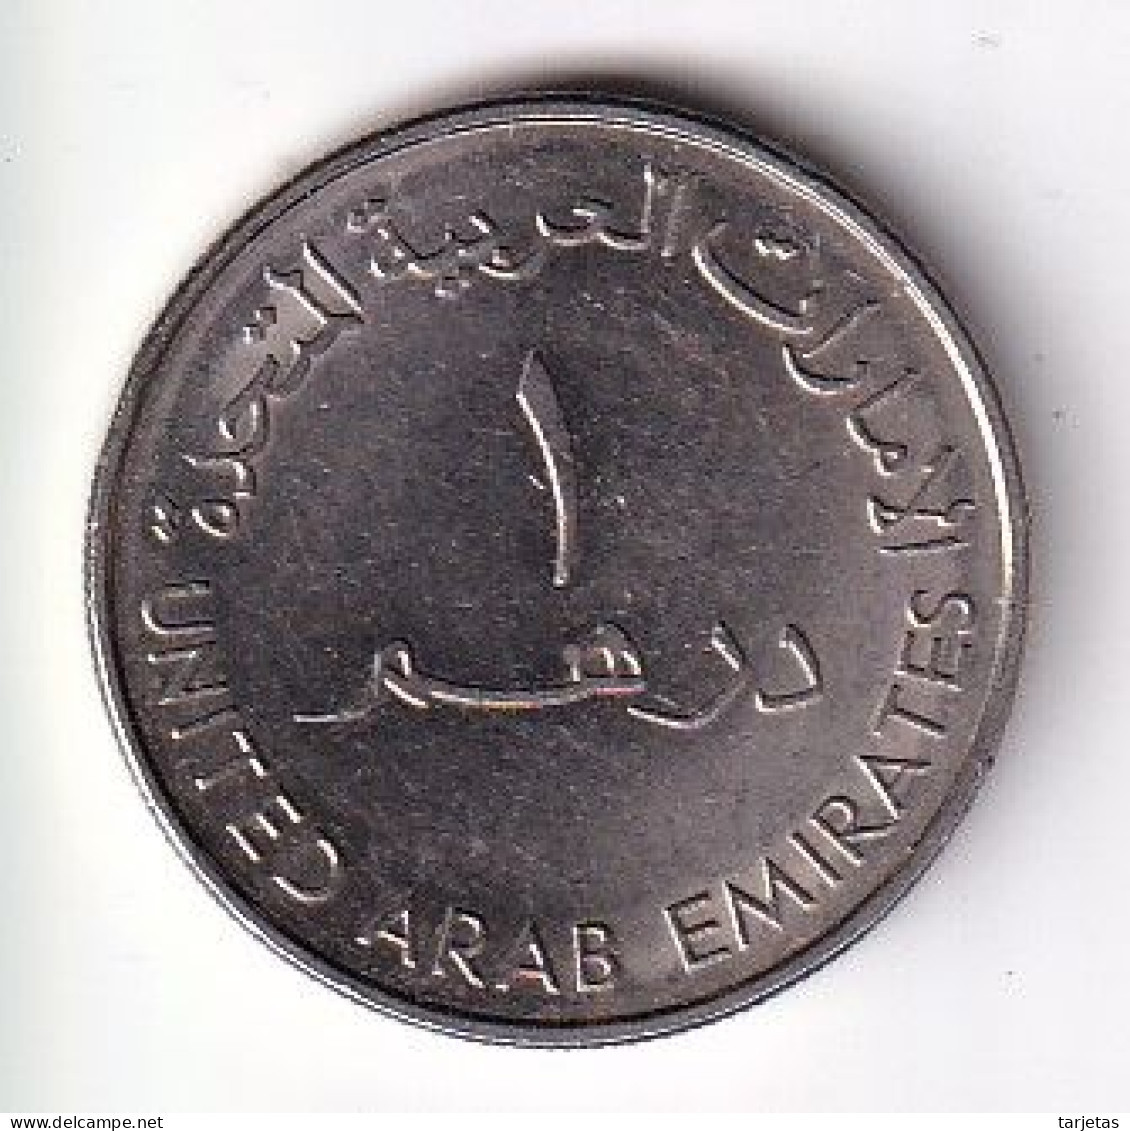 MONEDA DE EMIRATOS ARABES DE 1 DIRHAM DEL AÑO 2007 THE GOLDEN JUBILEE OF ABU DHABI POLICE (COIN) - Ver. Arab. Emirate